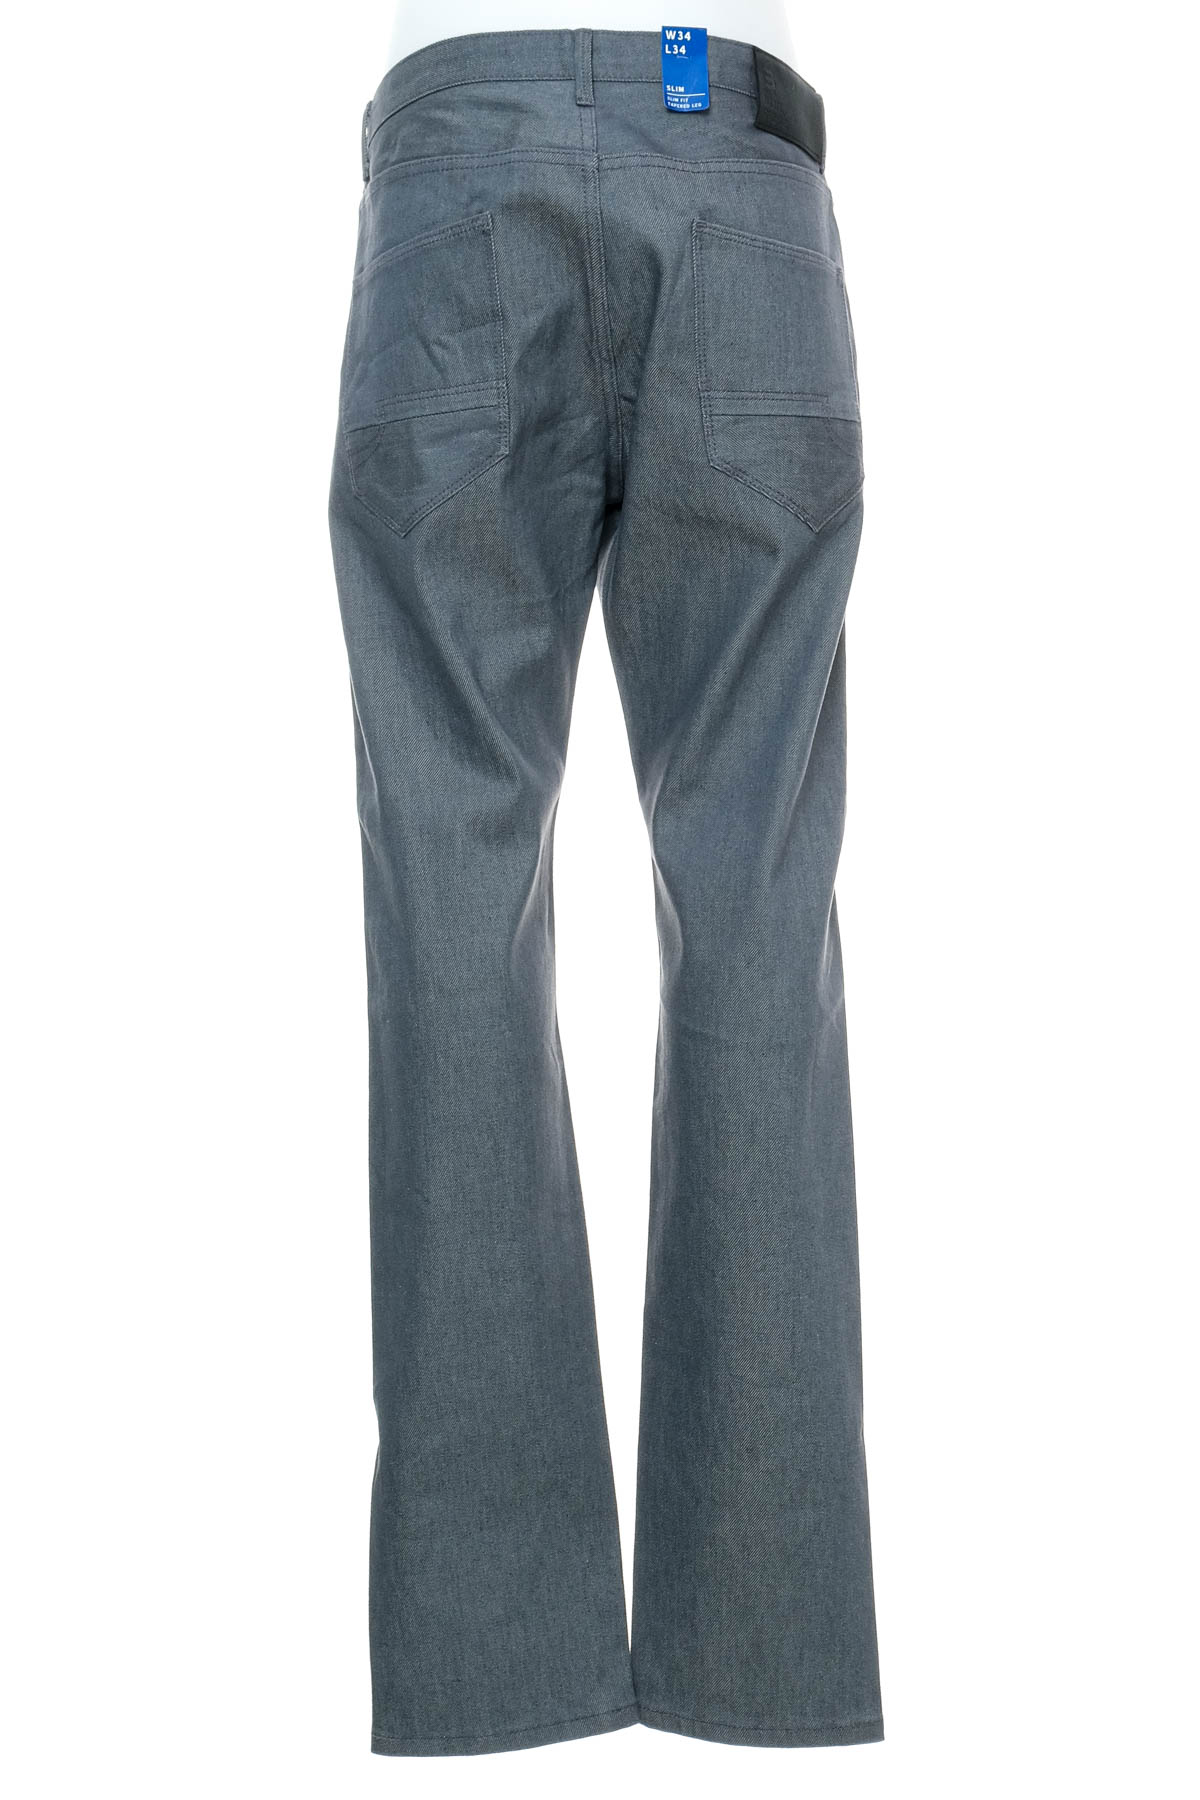 Pantalon pentru bărbați - Blue Ridge - 1